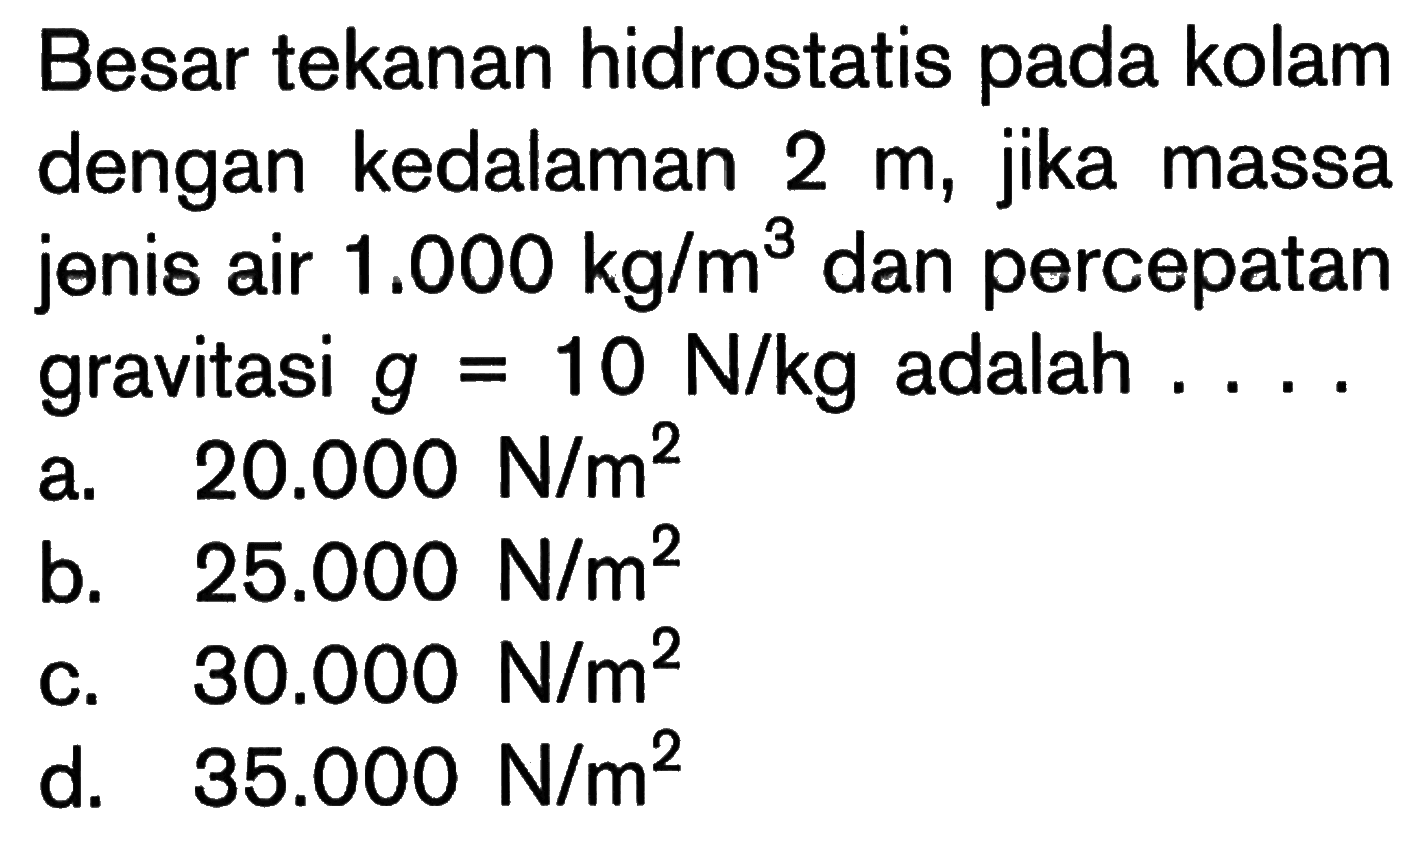 Besar tekanan hidrostatis pada kolam dengan kedalaman  2 m , jika massa jenis air  1.000 kg / m^3  dan percepatan gravitasi  g=10 N / kg  adalah ....